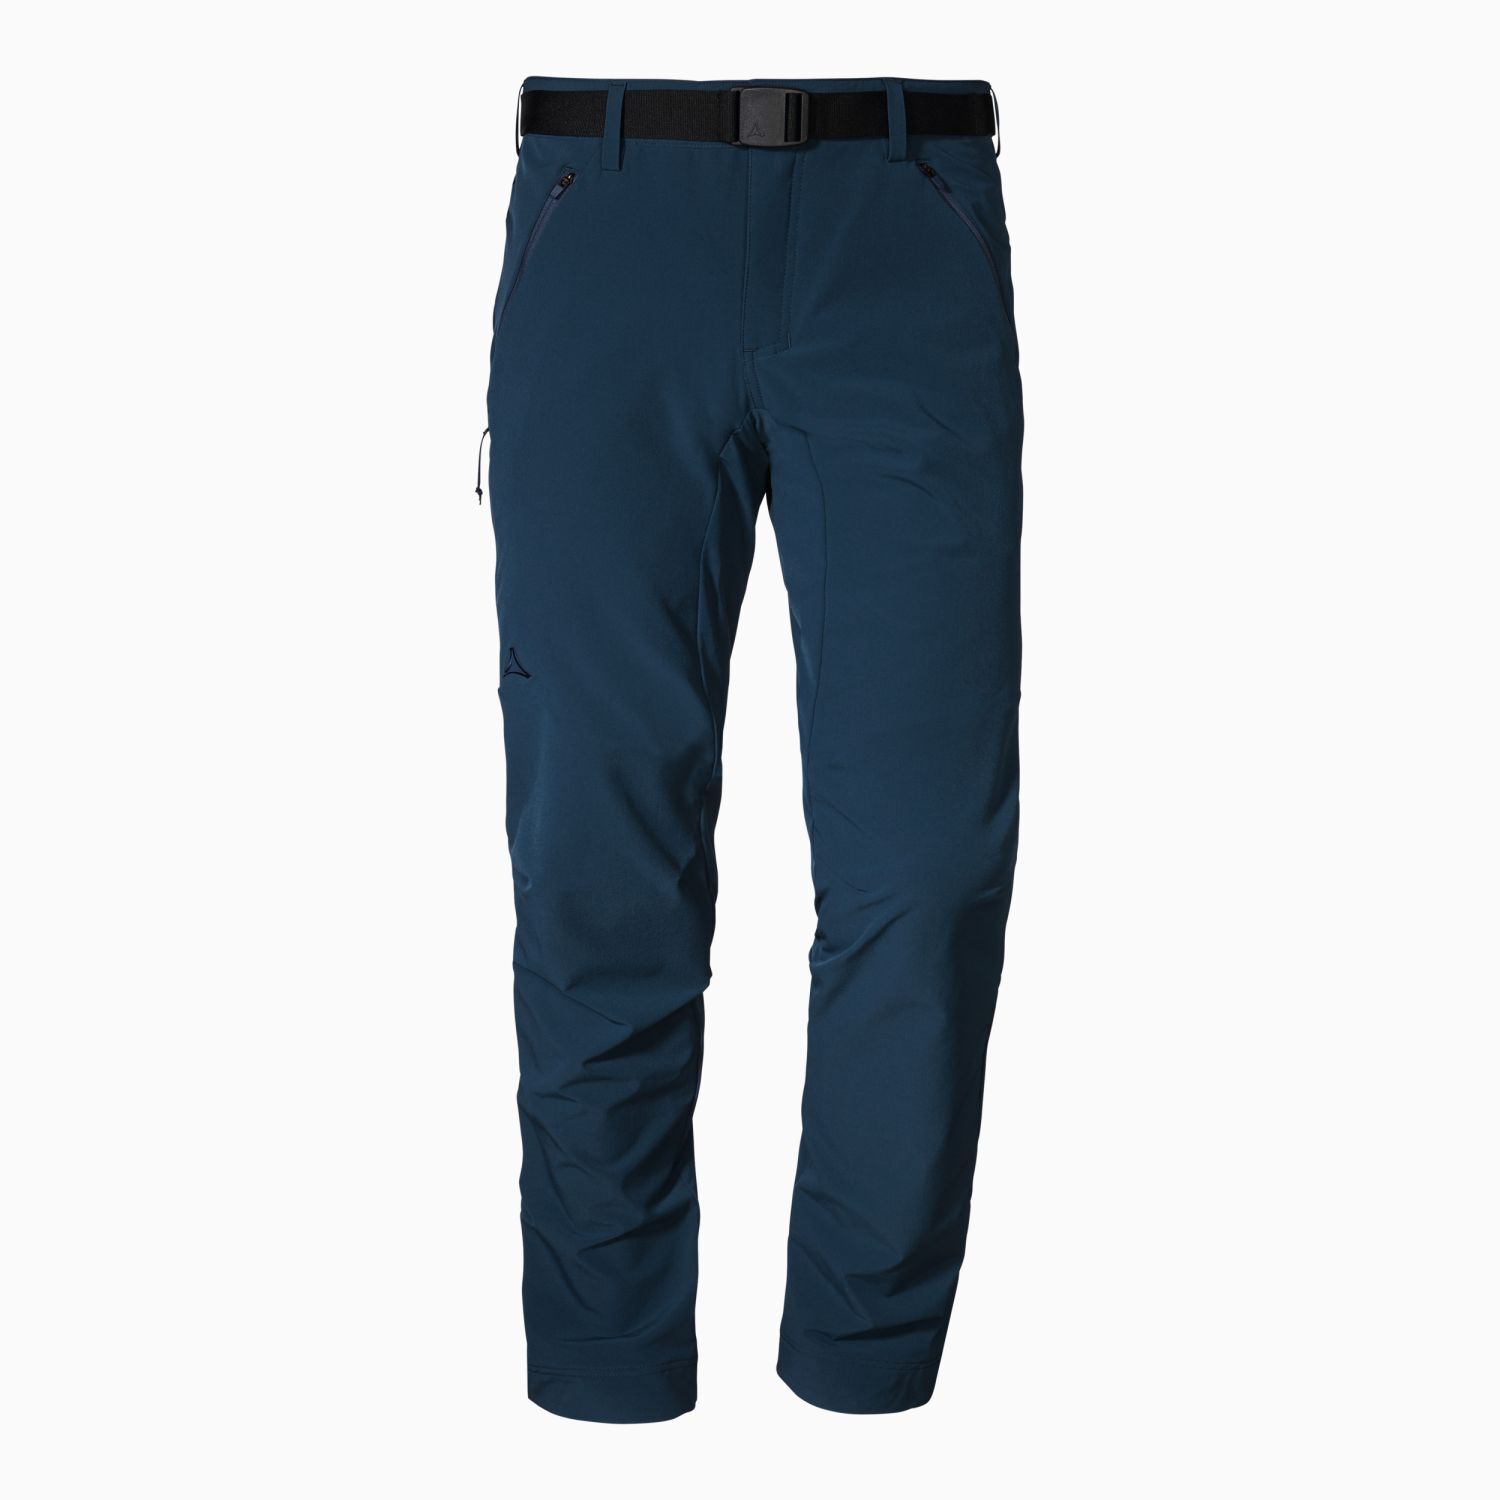 Schöffel Pants Taibun - Walking trousers - Men's